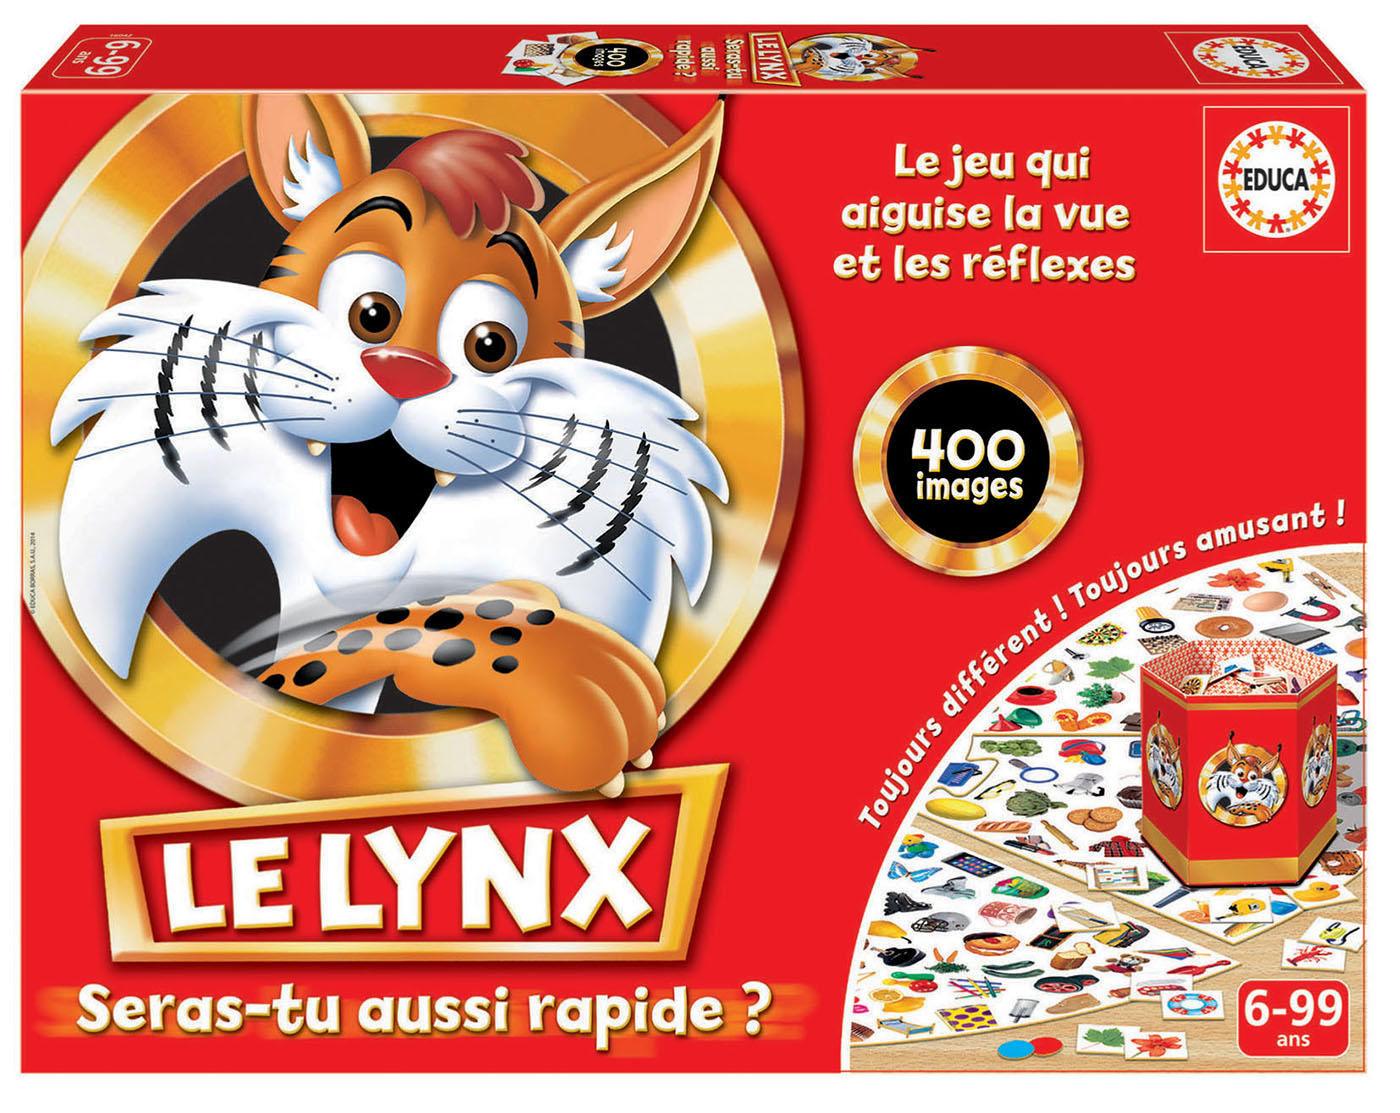 Le lynx 400 images, jeux de societe